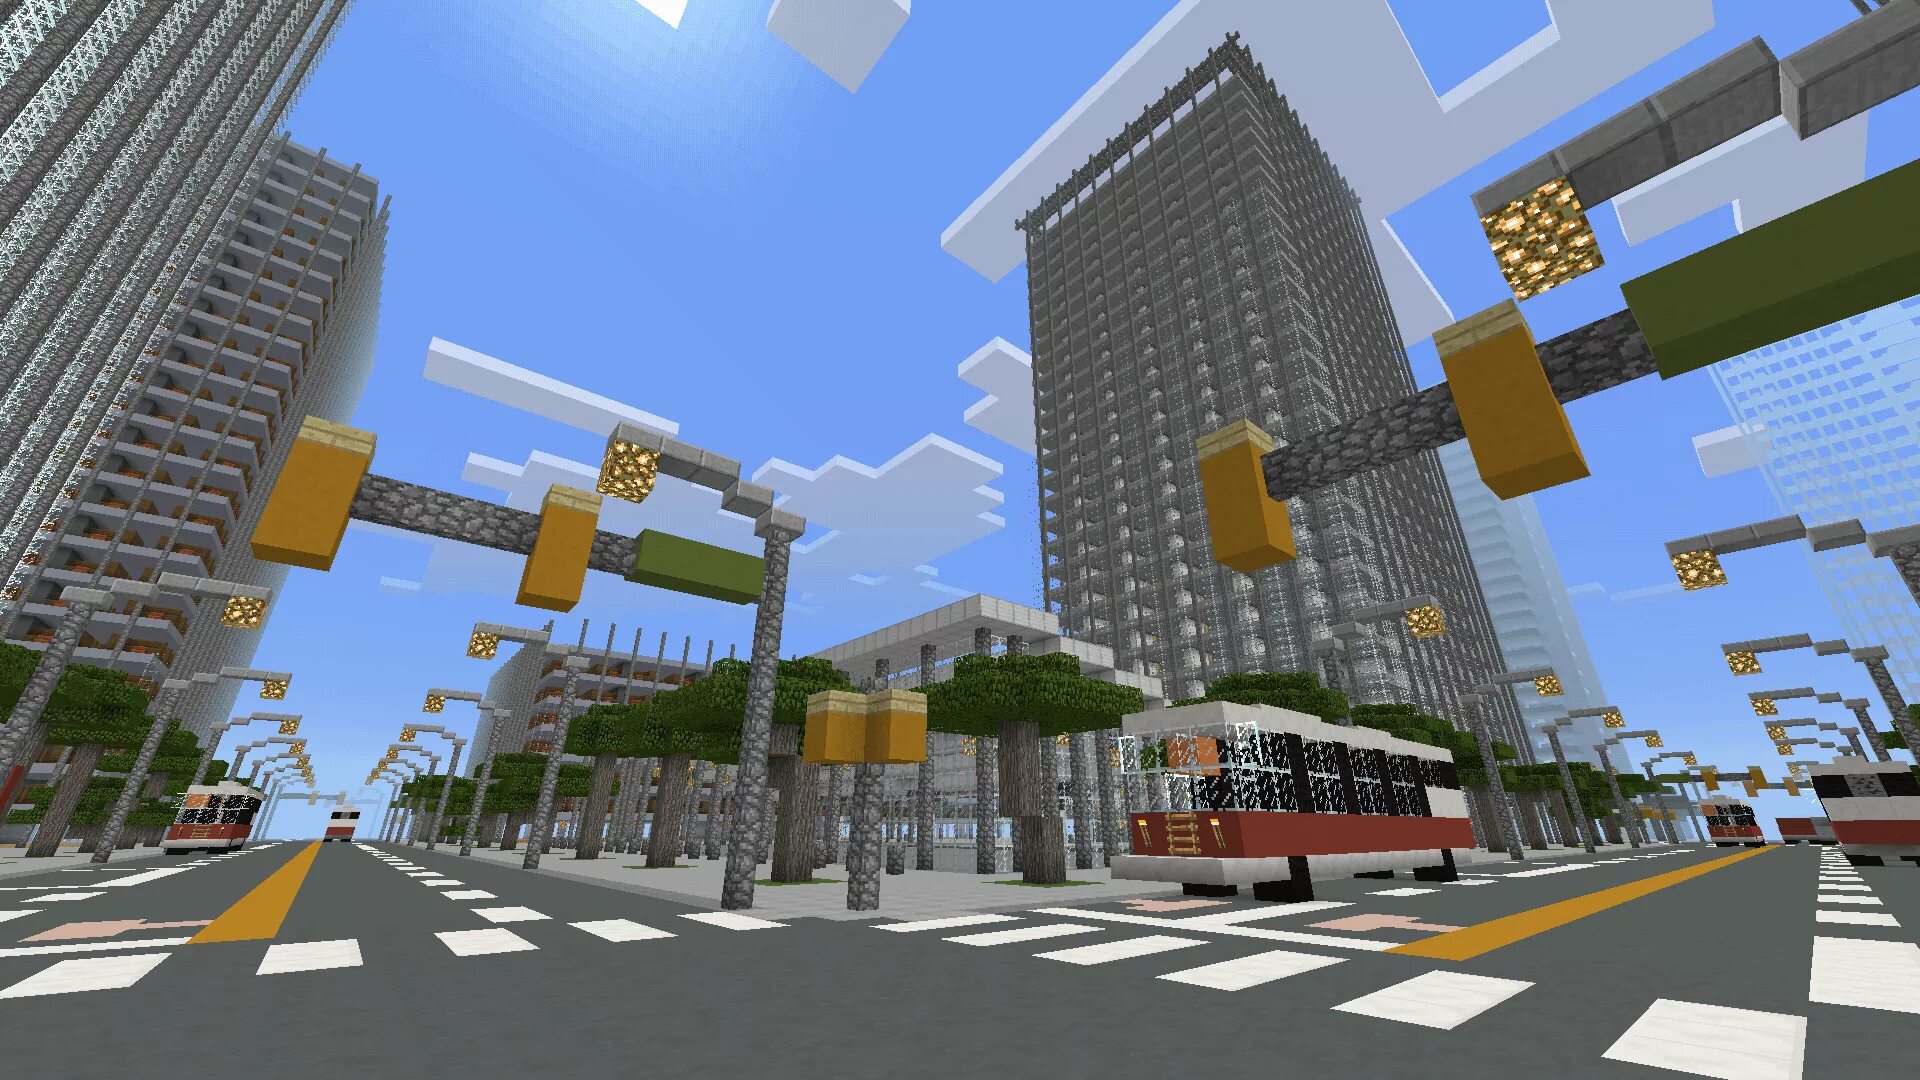 Town майнкрафт. Minecraft город 1.1.2.2. Город майнкрафт. Красивый город в МАЙНКРАФТЕ. Современный город в МАЙНКРАФТЕ.